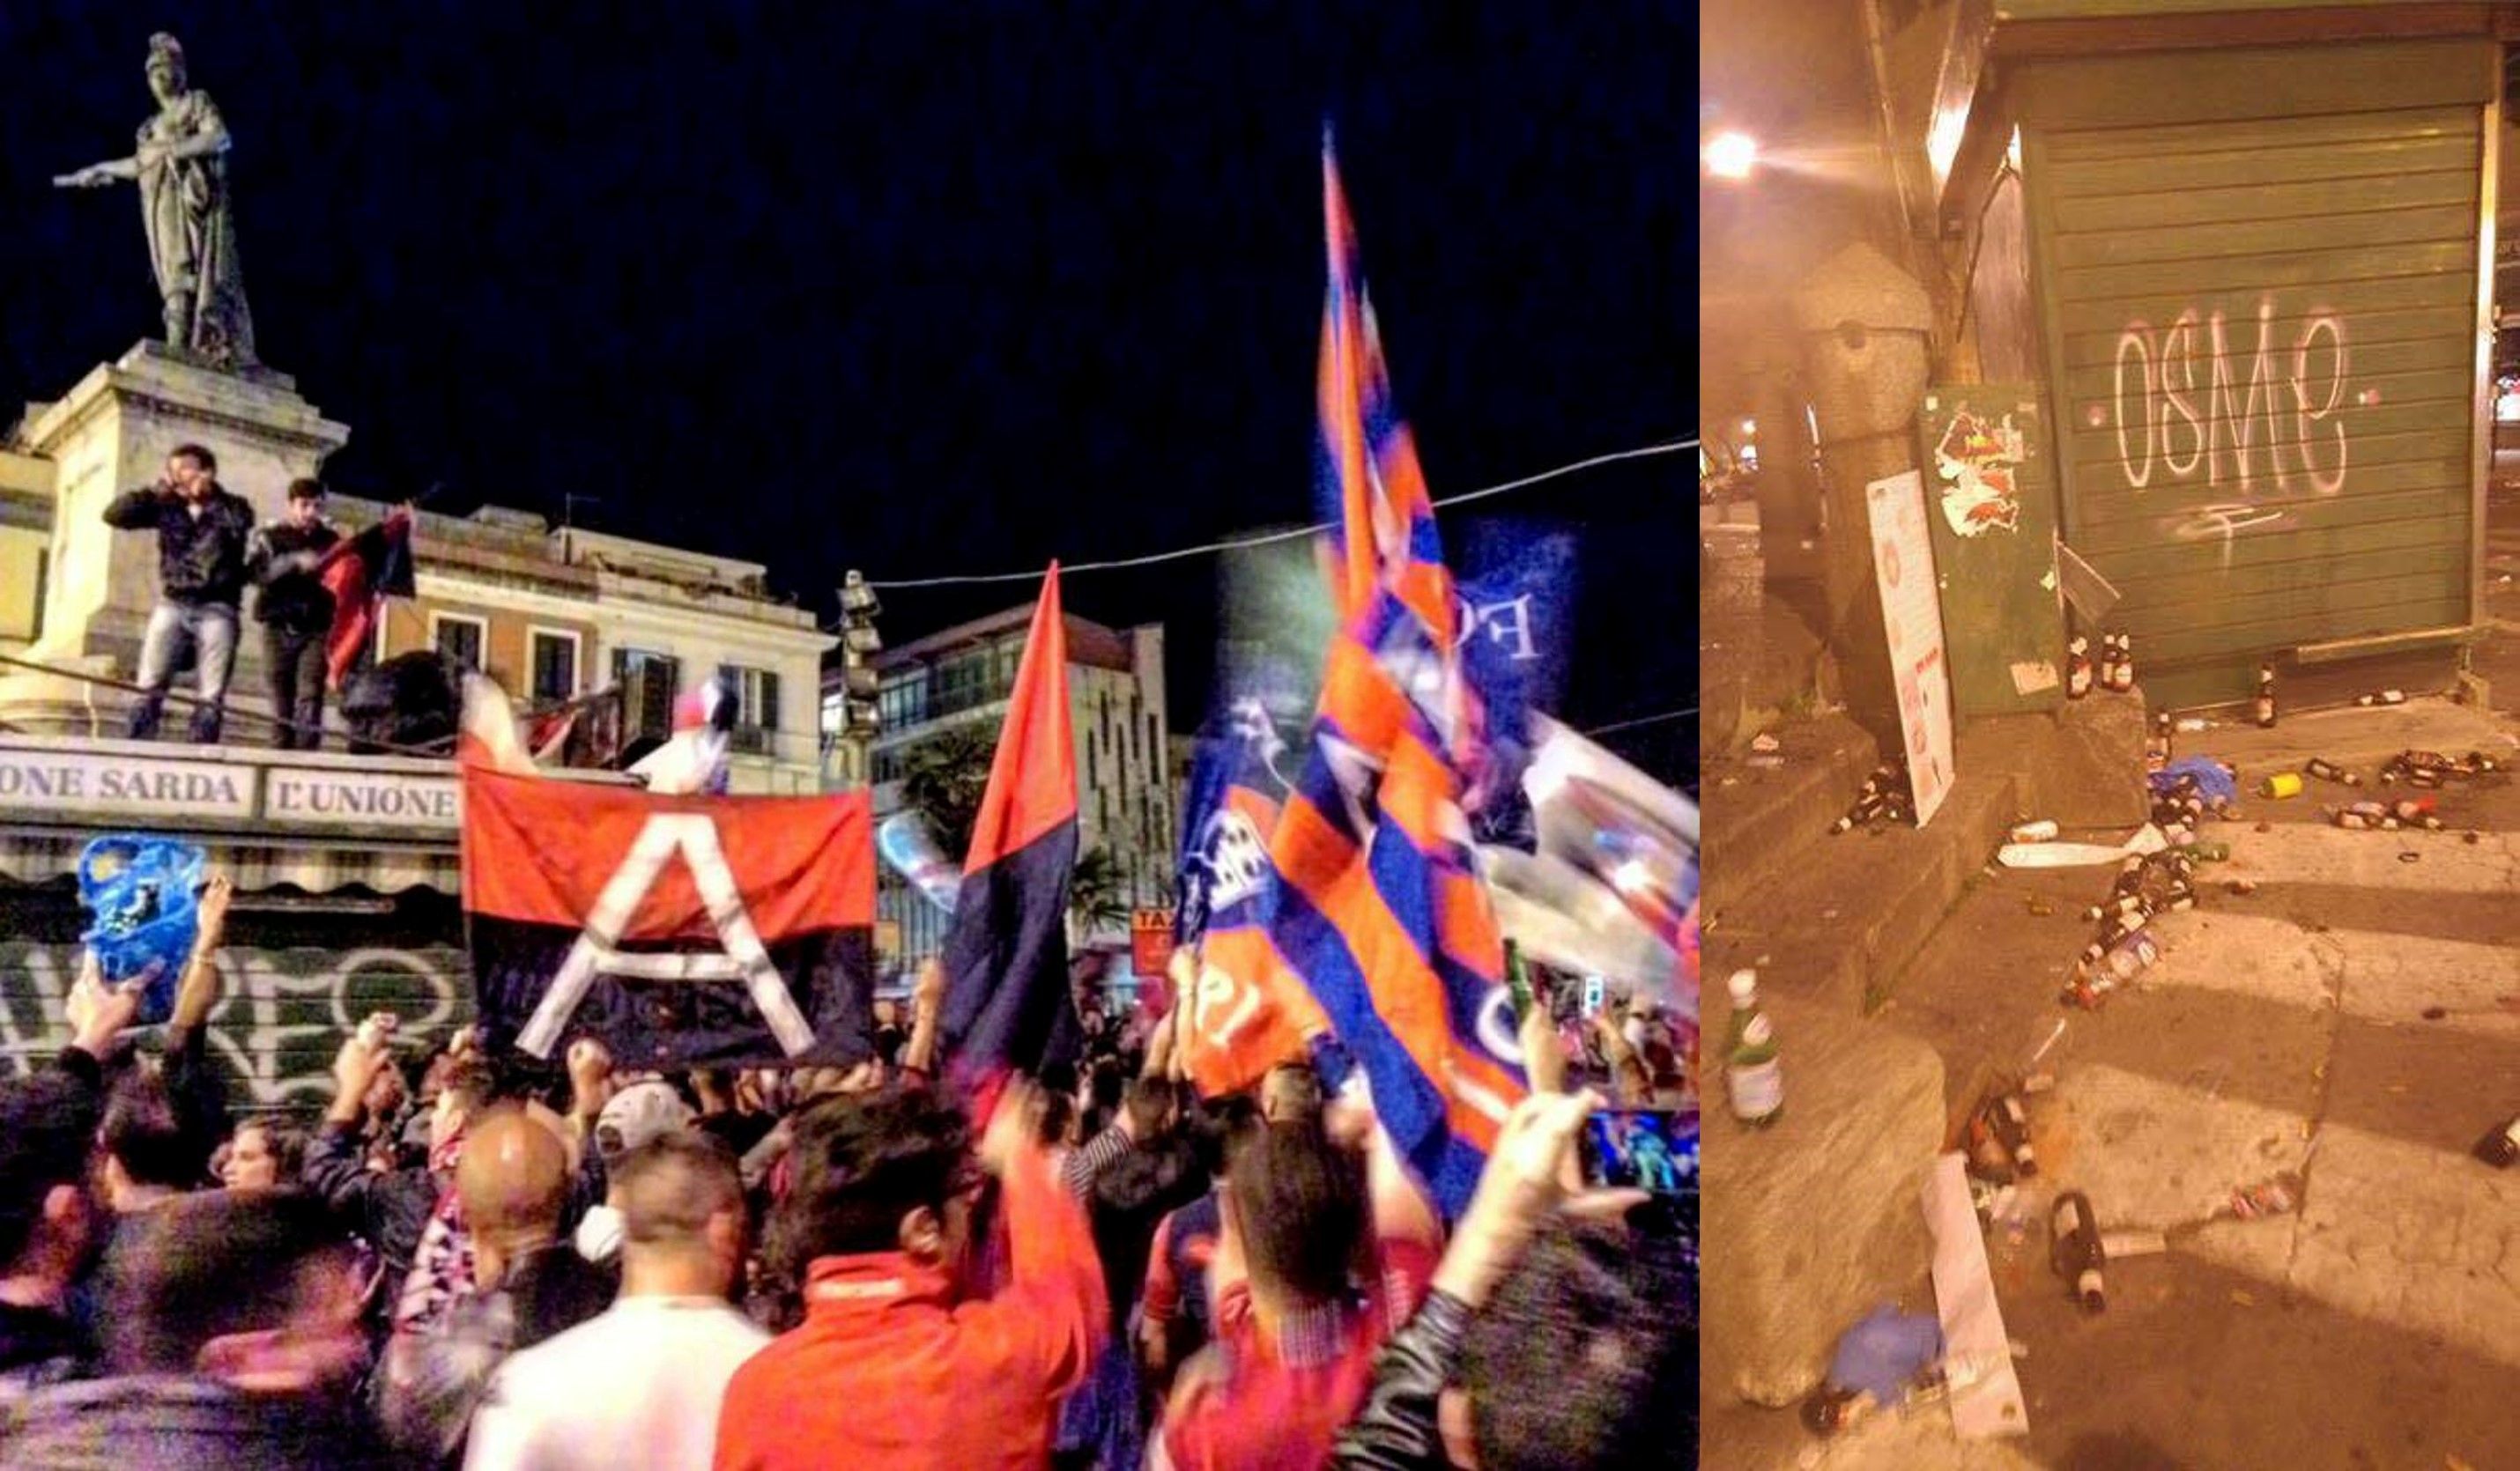 Cagliari promosso: l'altra faccia della festa. Danni e sporcizia in Piazza Yenne